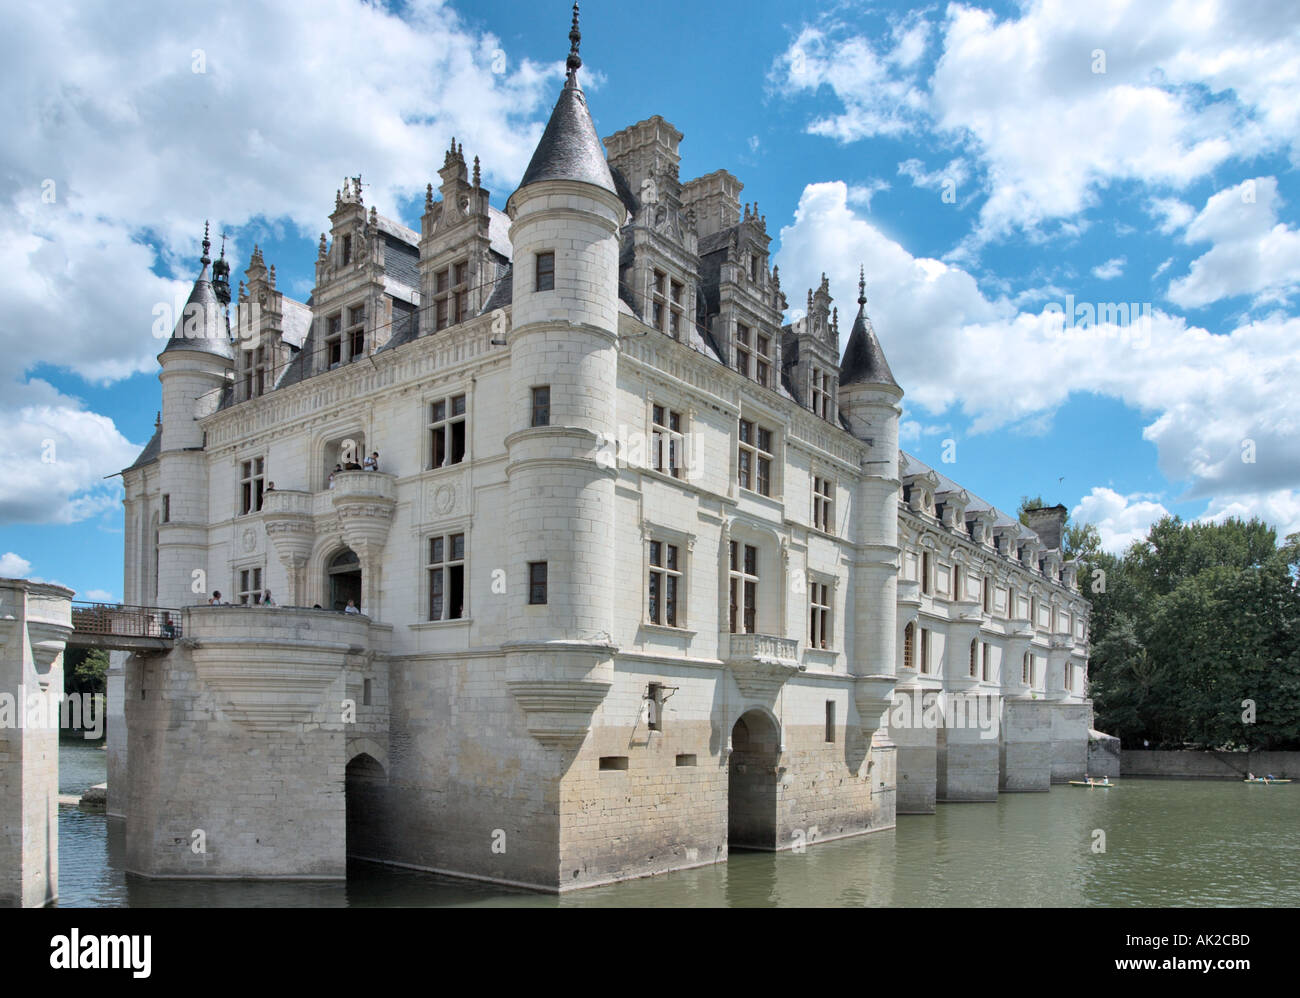 Le Château de Chenonceau sur le Cher, La Vallée de la Loire, France Banque D'Images